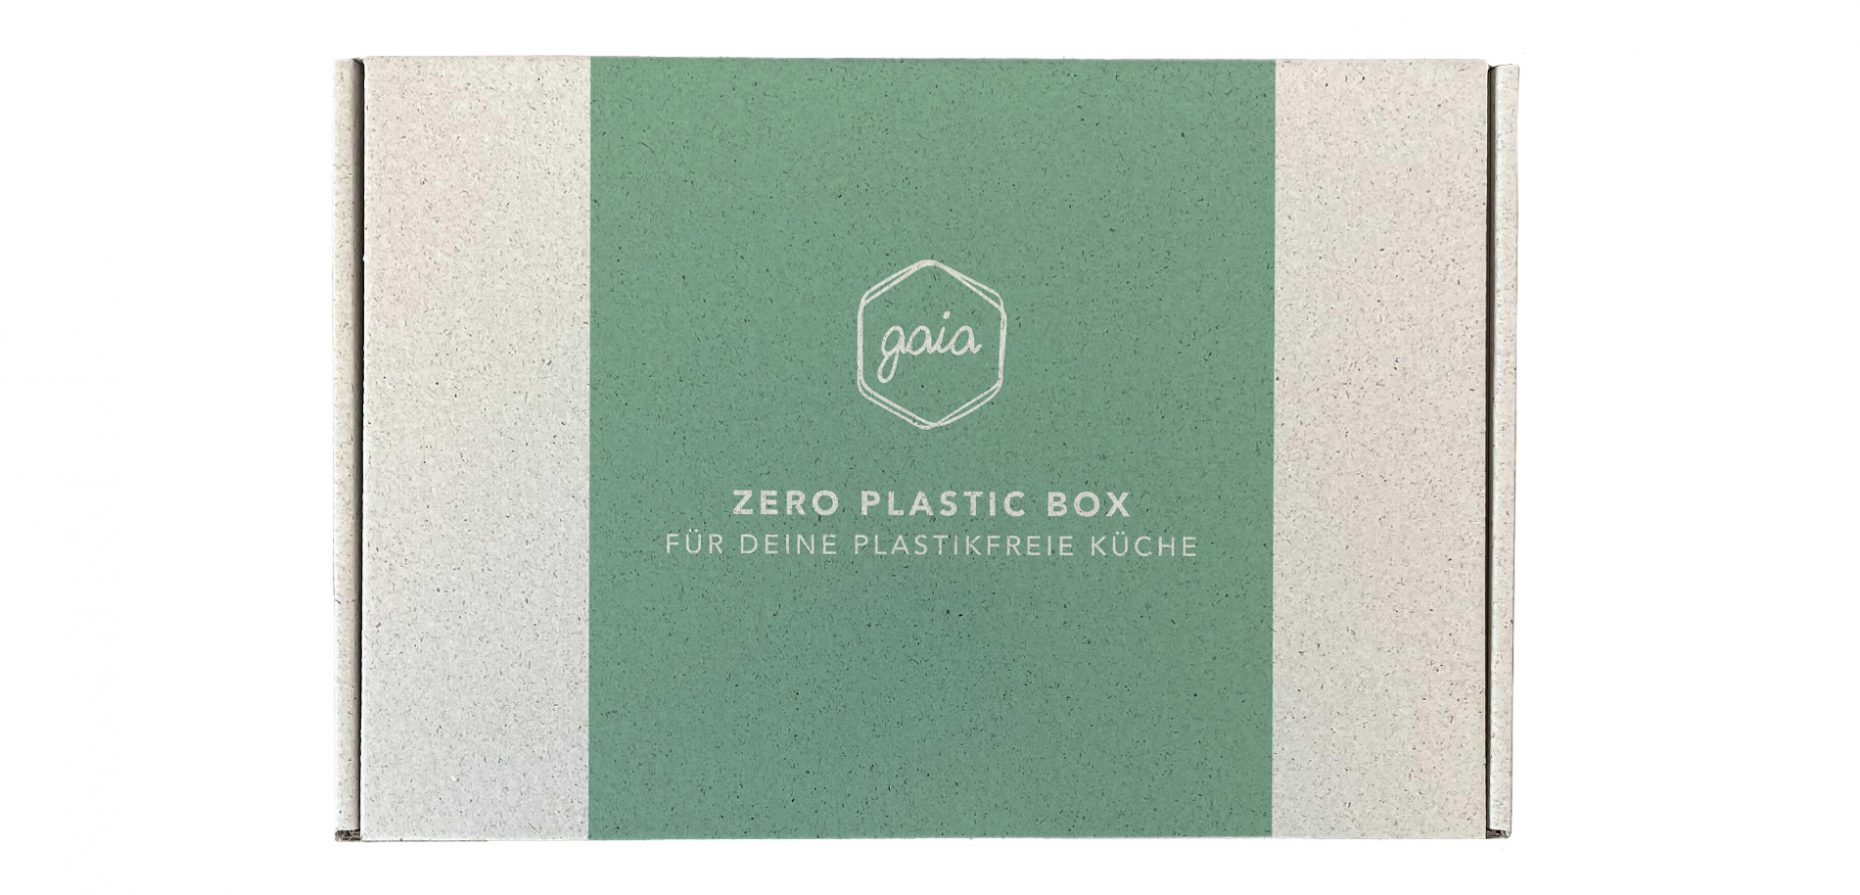 Das nach der griechischen Göttin der Erde benannten Unternehmen Gaia ist spezialisiert auf nachhaltige Alternativen zu Haushalts- bzw. Wegwerfartikeln aus Plastik. Unser Bild zeigt die Gaia Zero Plastic Box.